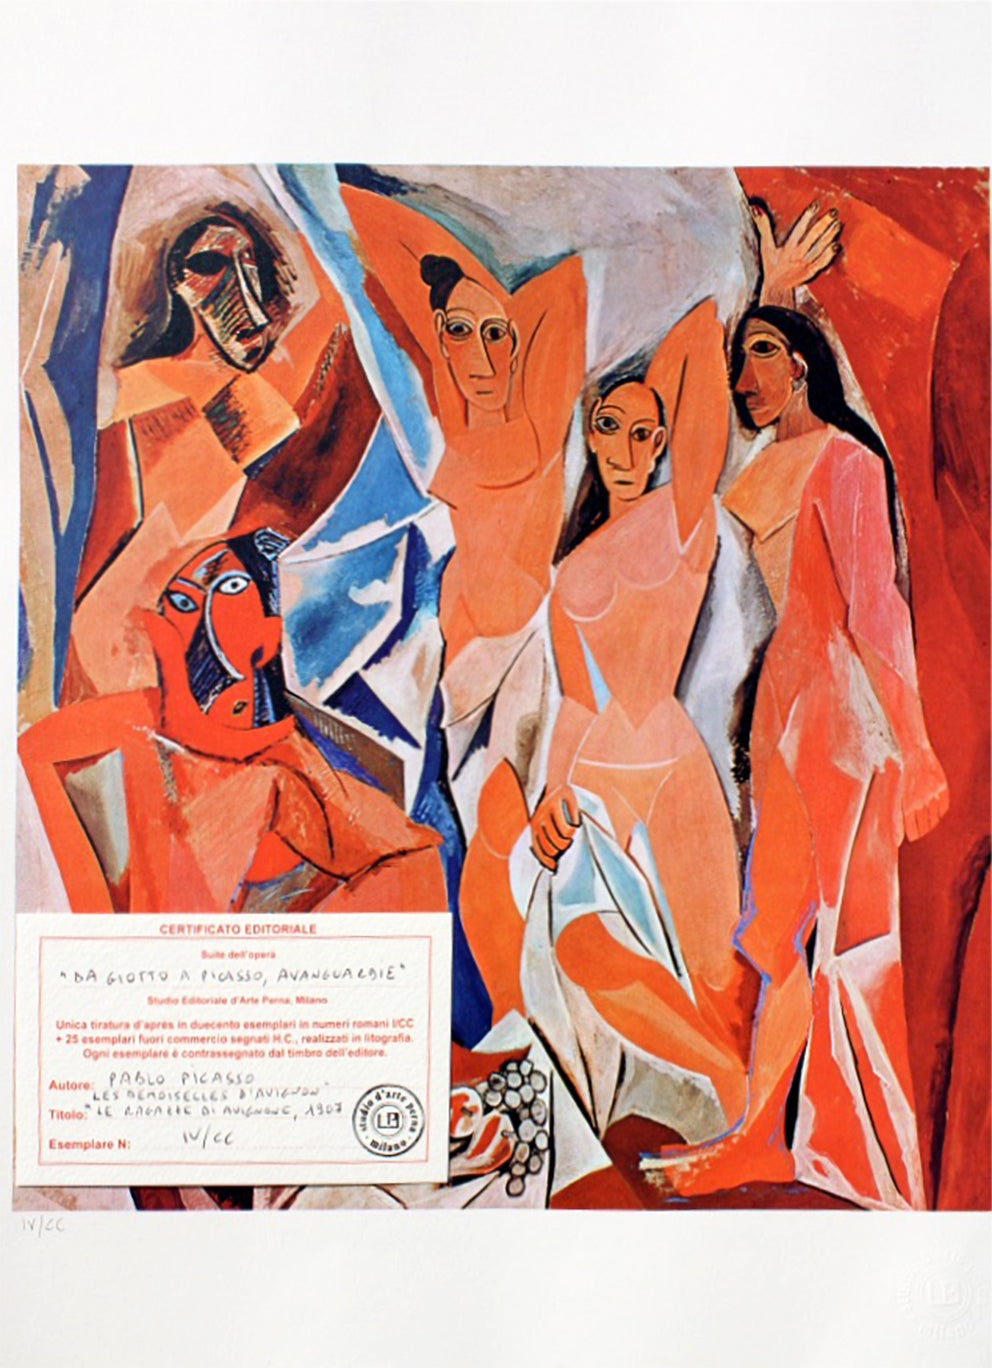 Pablo Picasso - Les demoiselles d'Avignon (1962-1967)